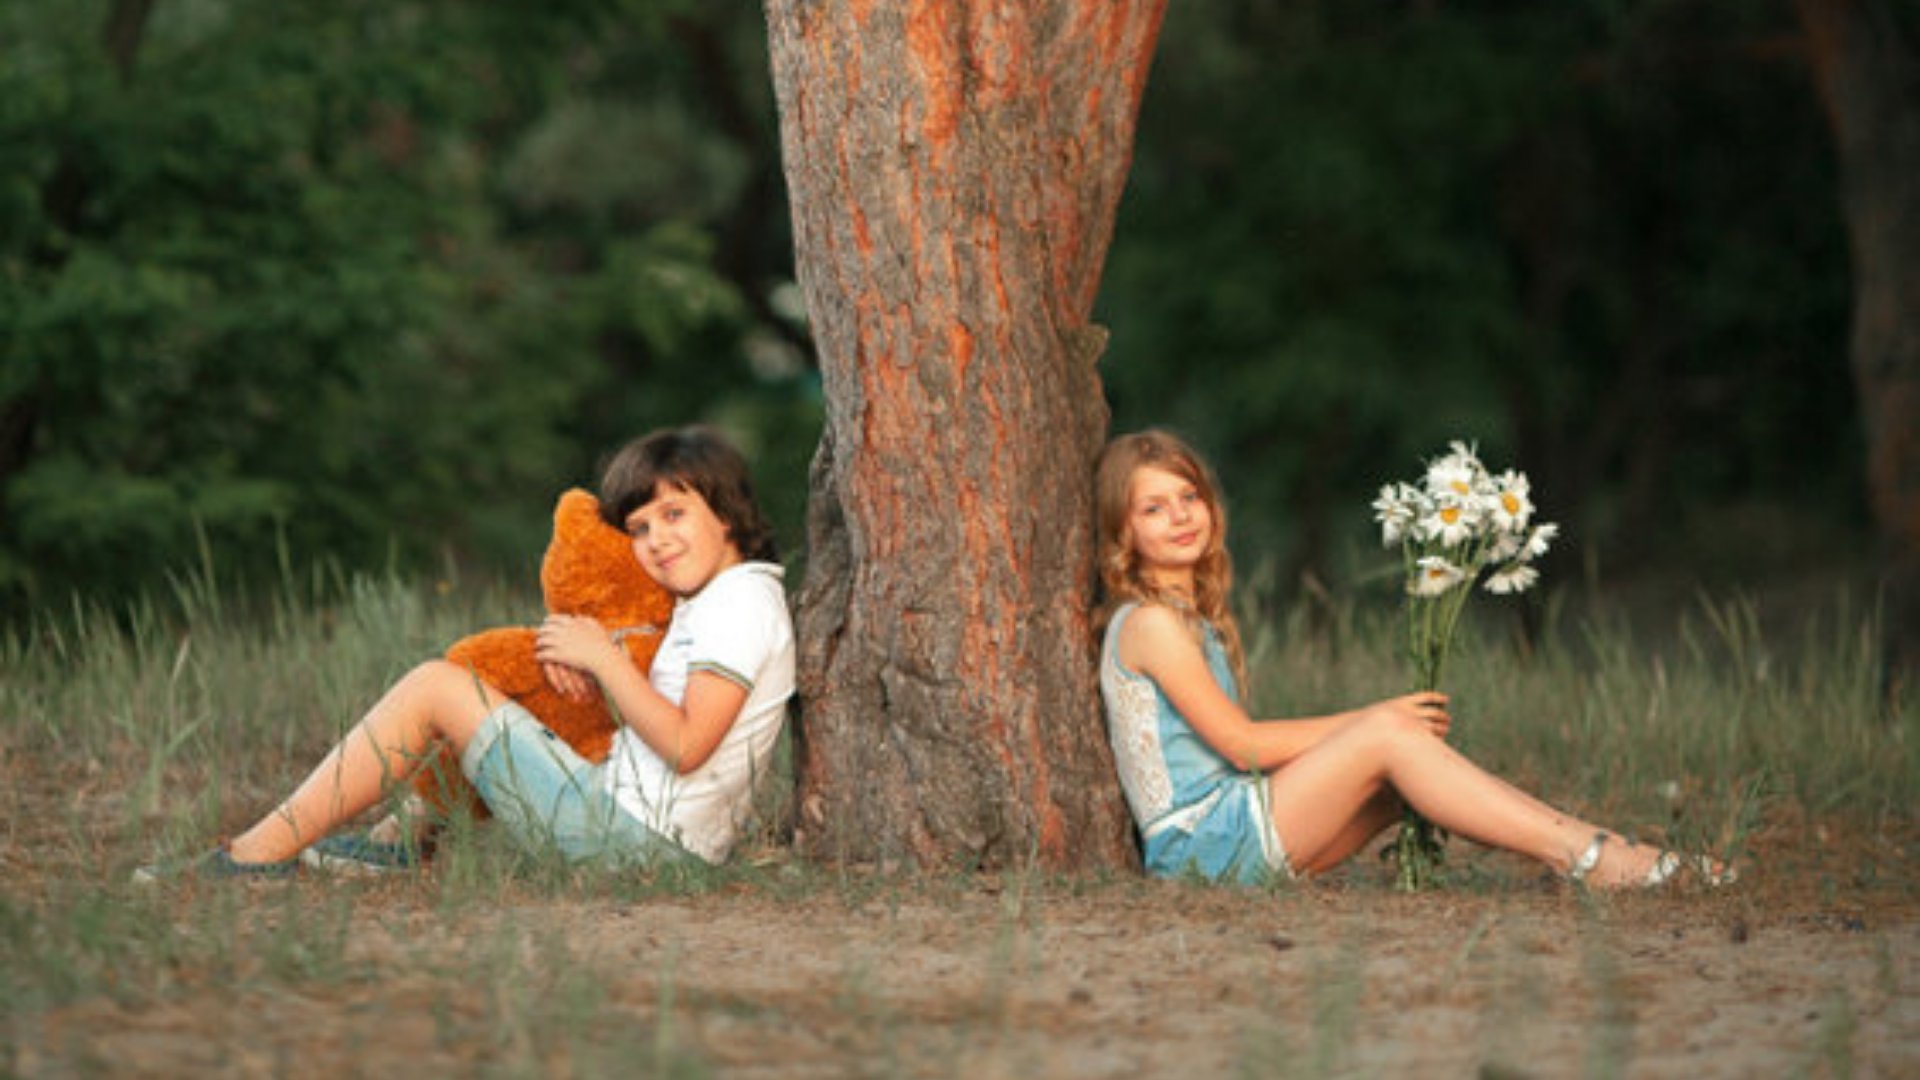 Duas crianças sentadas embaixo de uma àrvore, cada uma de um lado. A menina segura um buquê de flores e o menino um urso de pelúcia